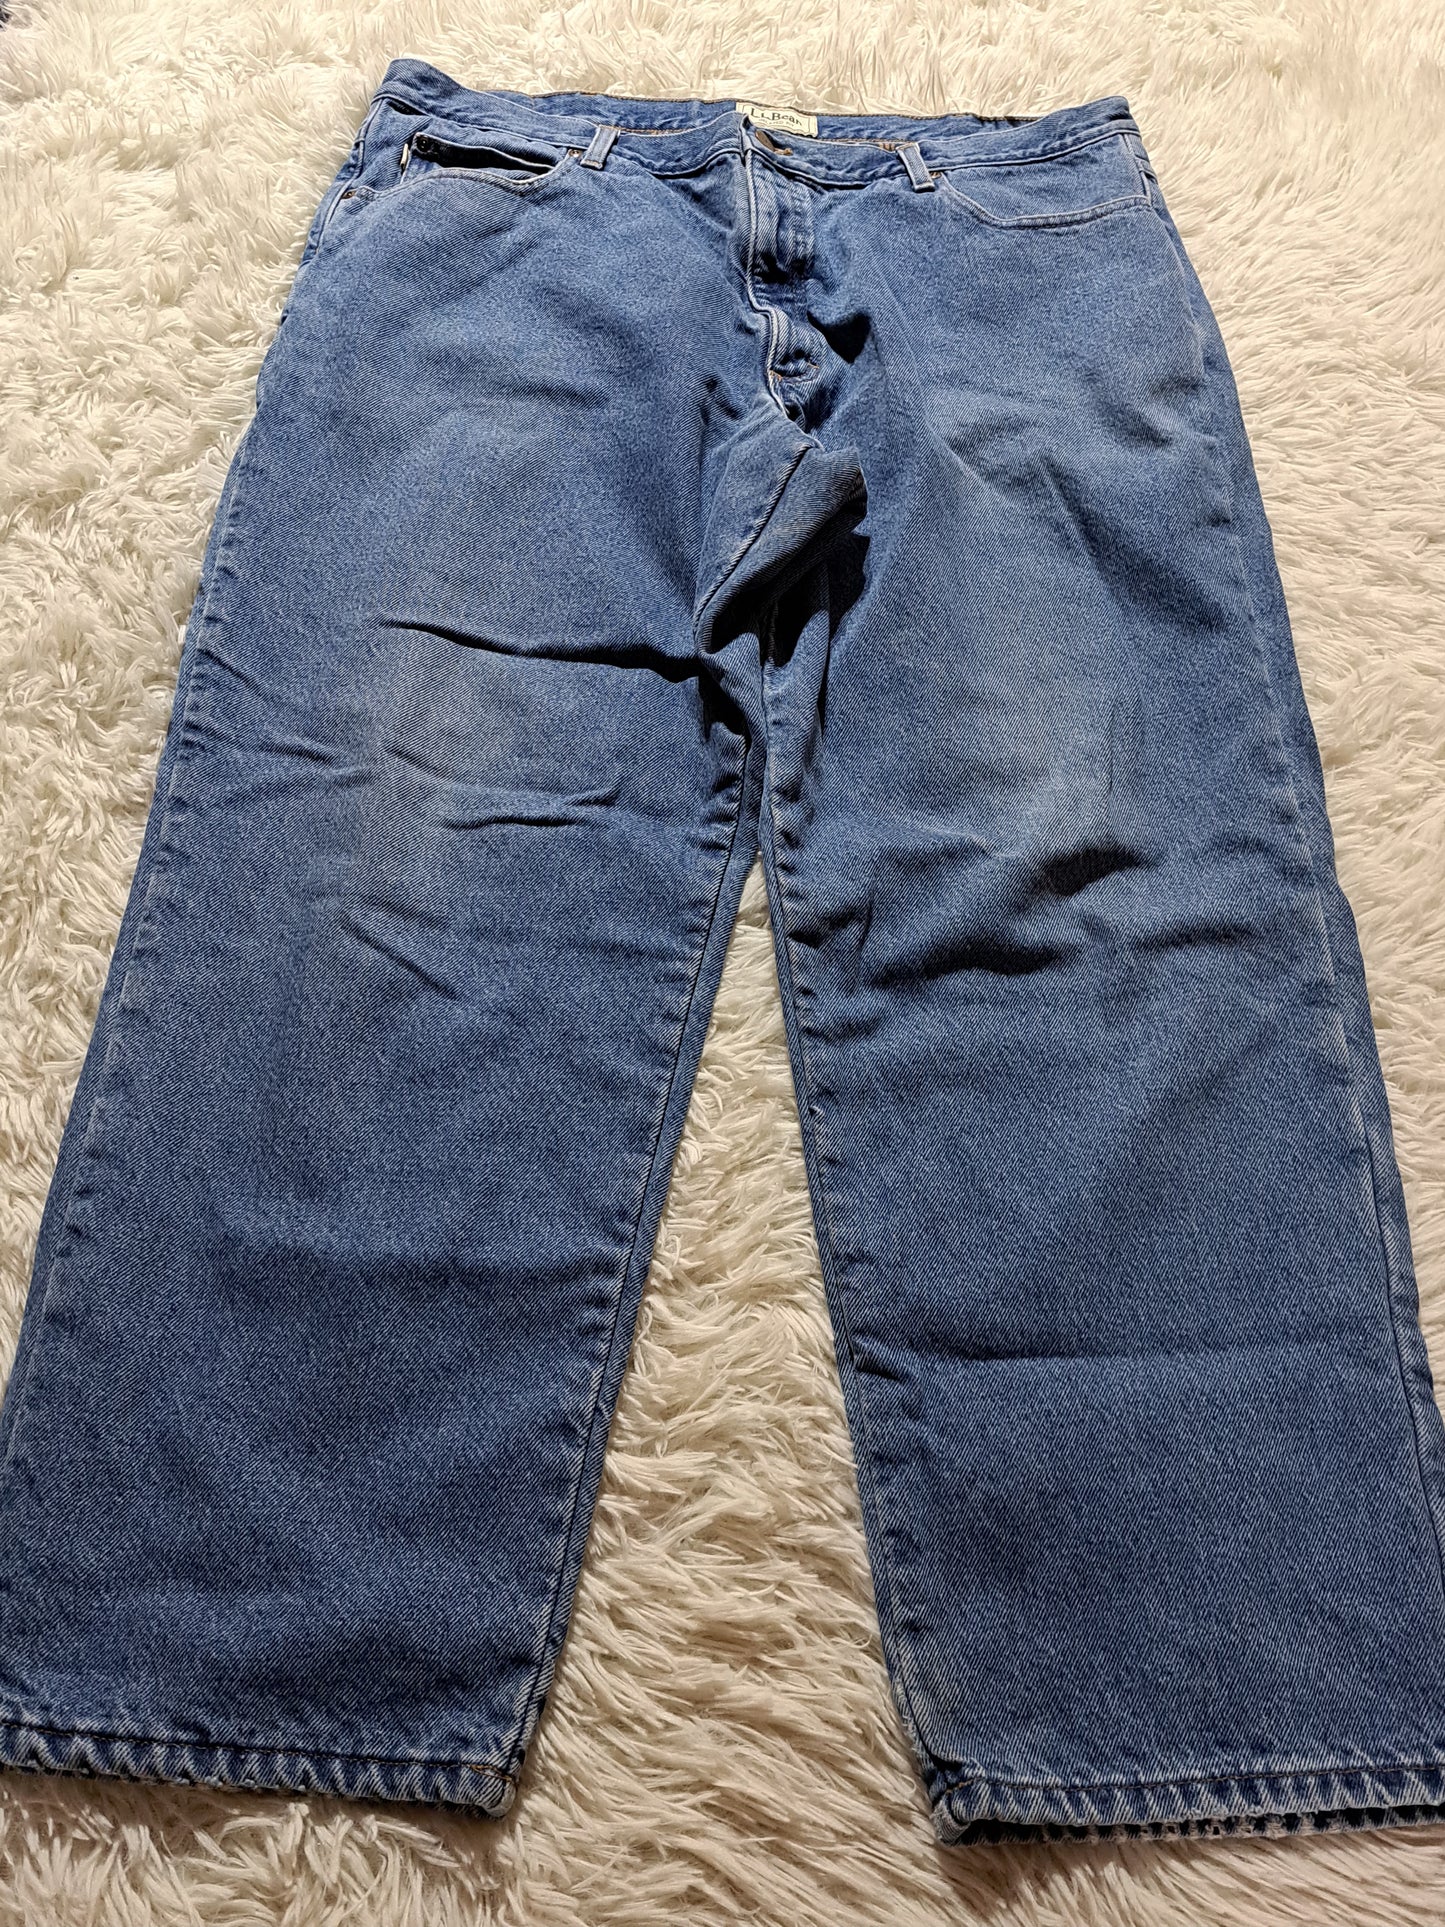 Vintage L.L. Bean Jeans Plaid Lining Blue - 42 x 30